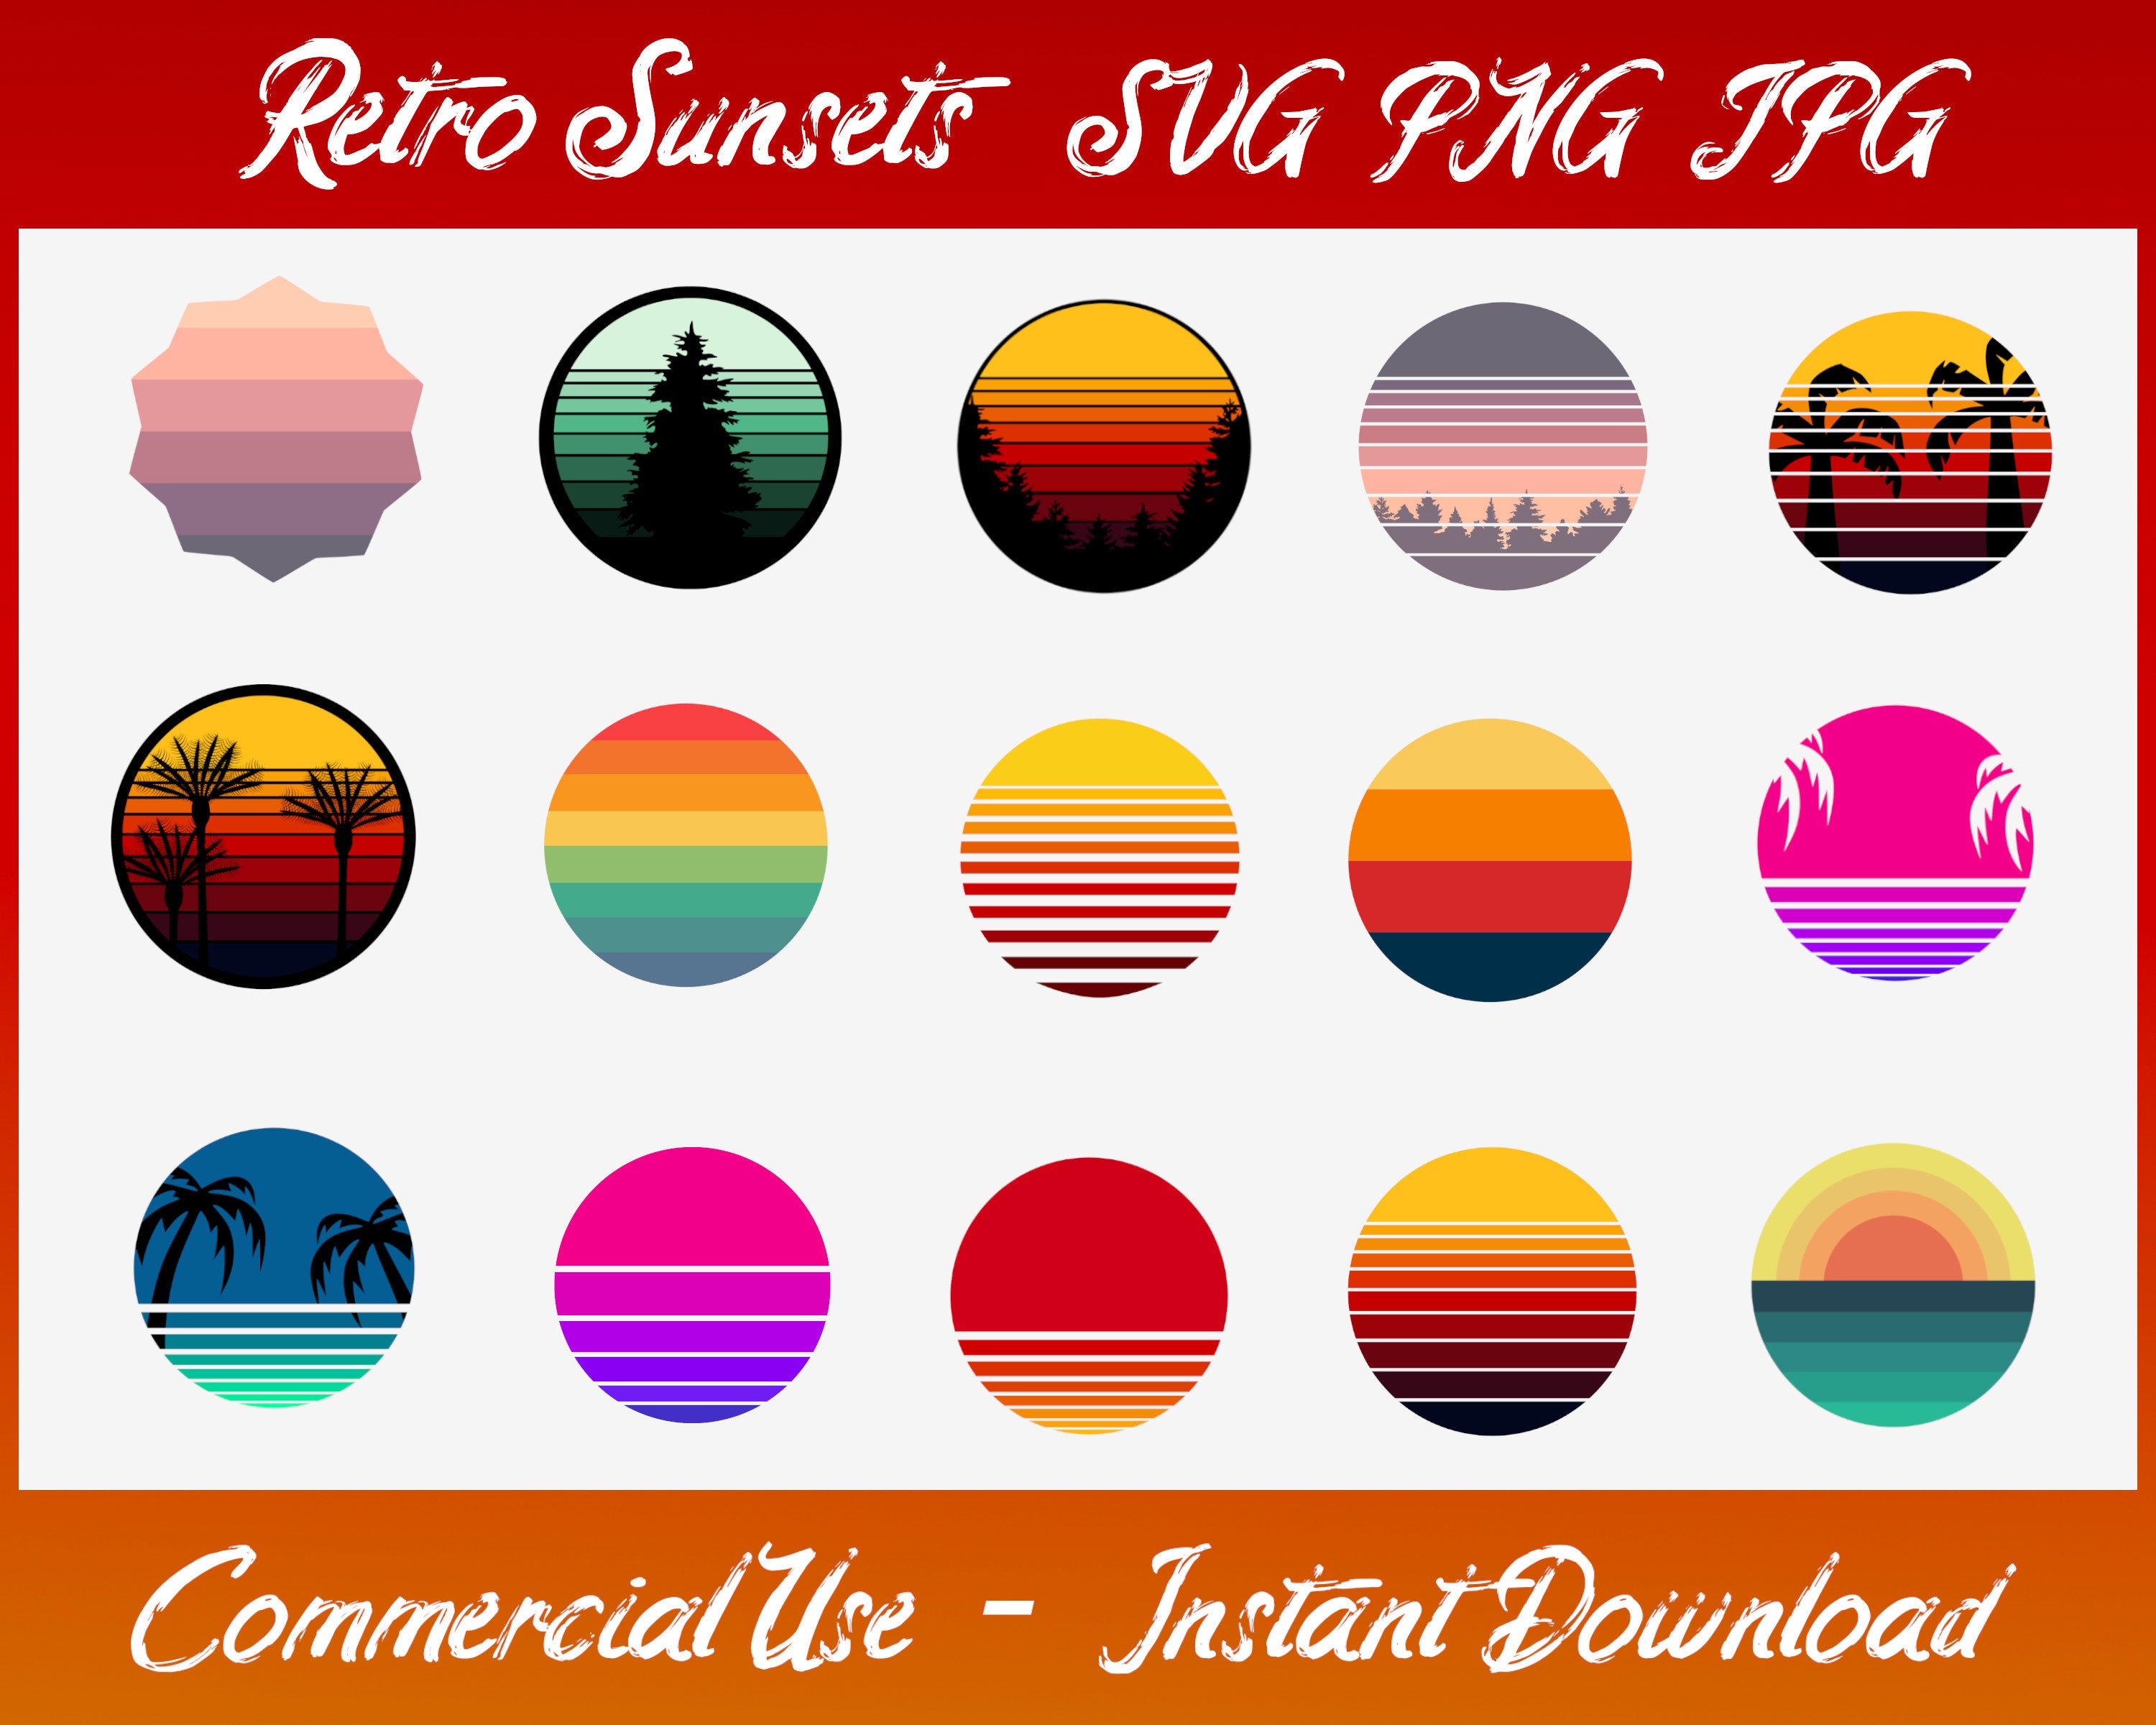 Gói hình ảnh Retro Sunset Circle đem đến cho bạn phiên bản Retro đầy sang trọng và tươi sáng. Với những gam màu ấm áp và thiết kế cổ điển, bộ sưu tập này là sự kết hợp hoàn hảo của sự nổi bật và lấy cảm hứng từ những kỷ niệm đẹp. Hãy khám phá gói hình ảnh Retro Sunset Circle và trang trí hình ảnh của bạn với vẻ đẹp đầy tinh tế này!